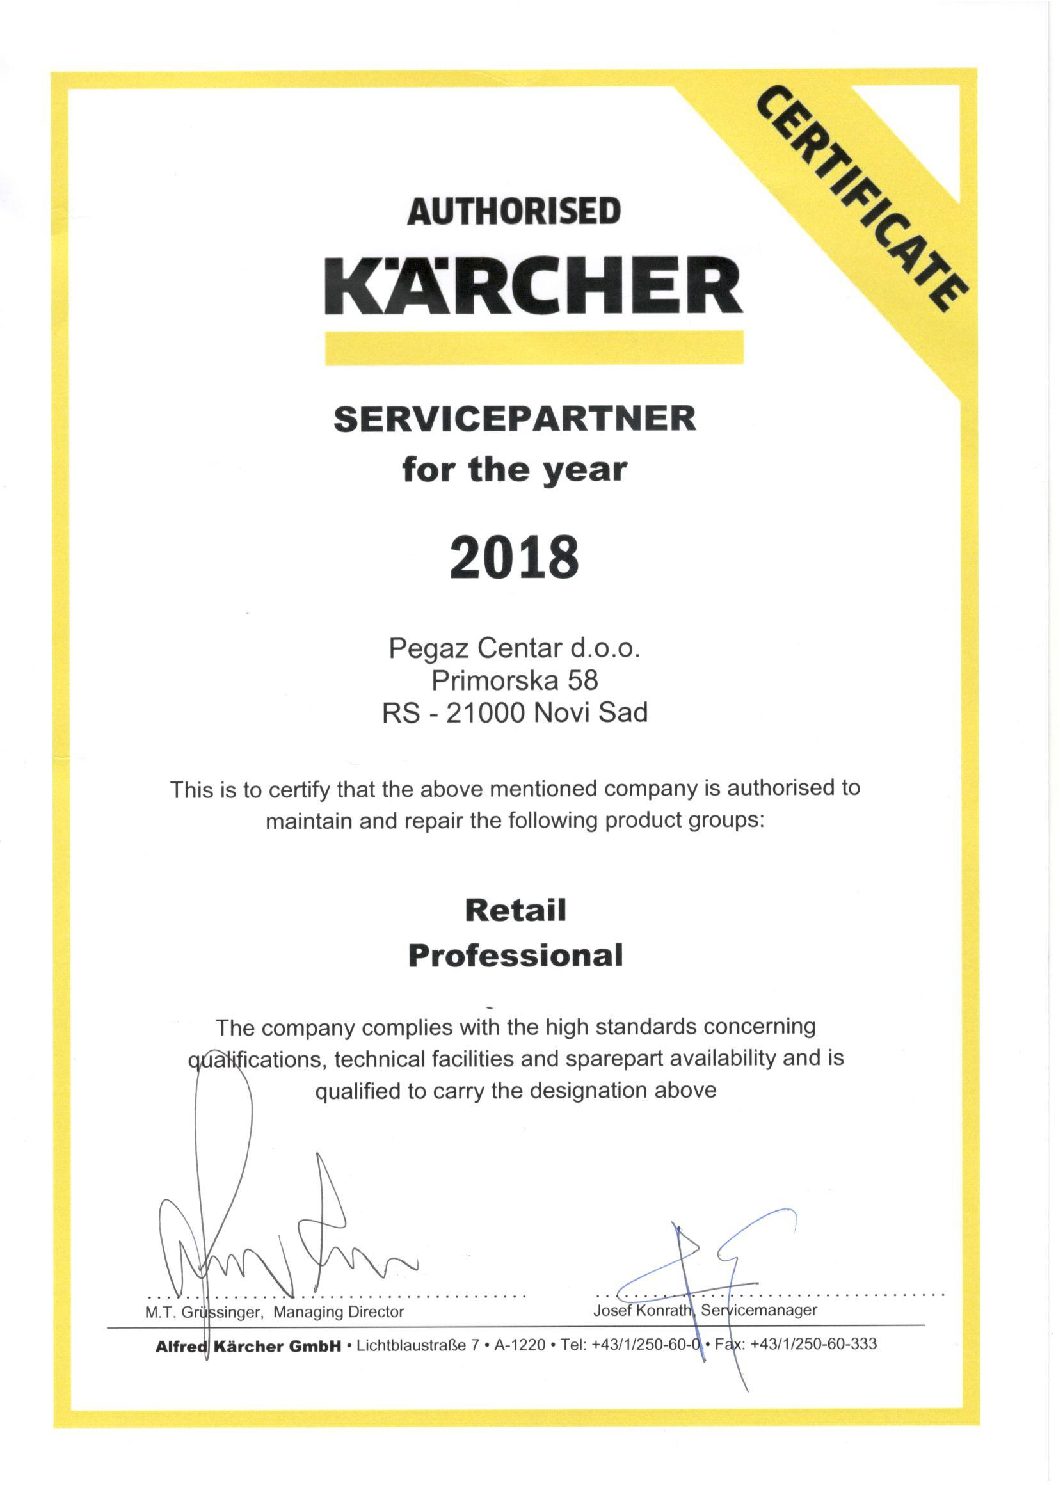 Pegaz Centar d.o.o. - ovlašćeni distributer i servis za Karcher uređaje za 2018. godinu